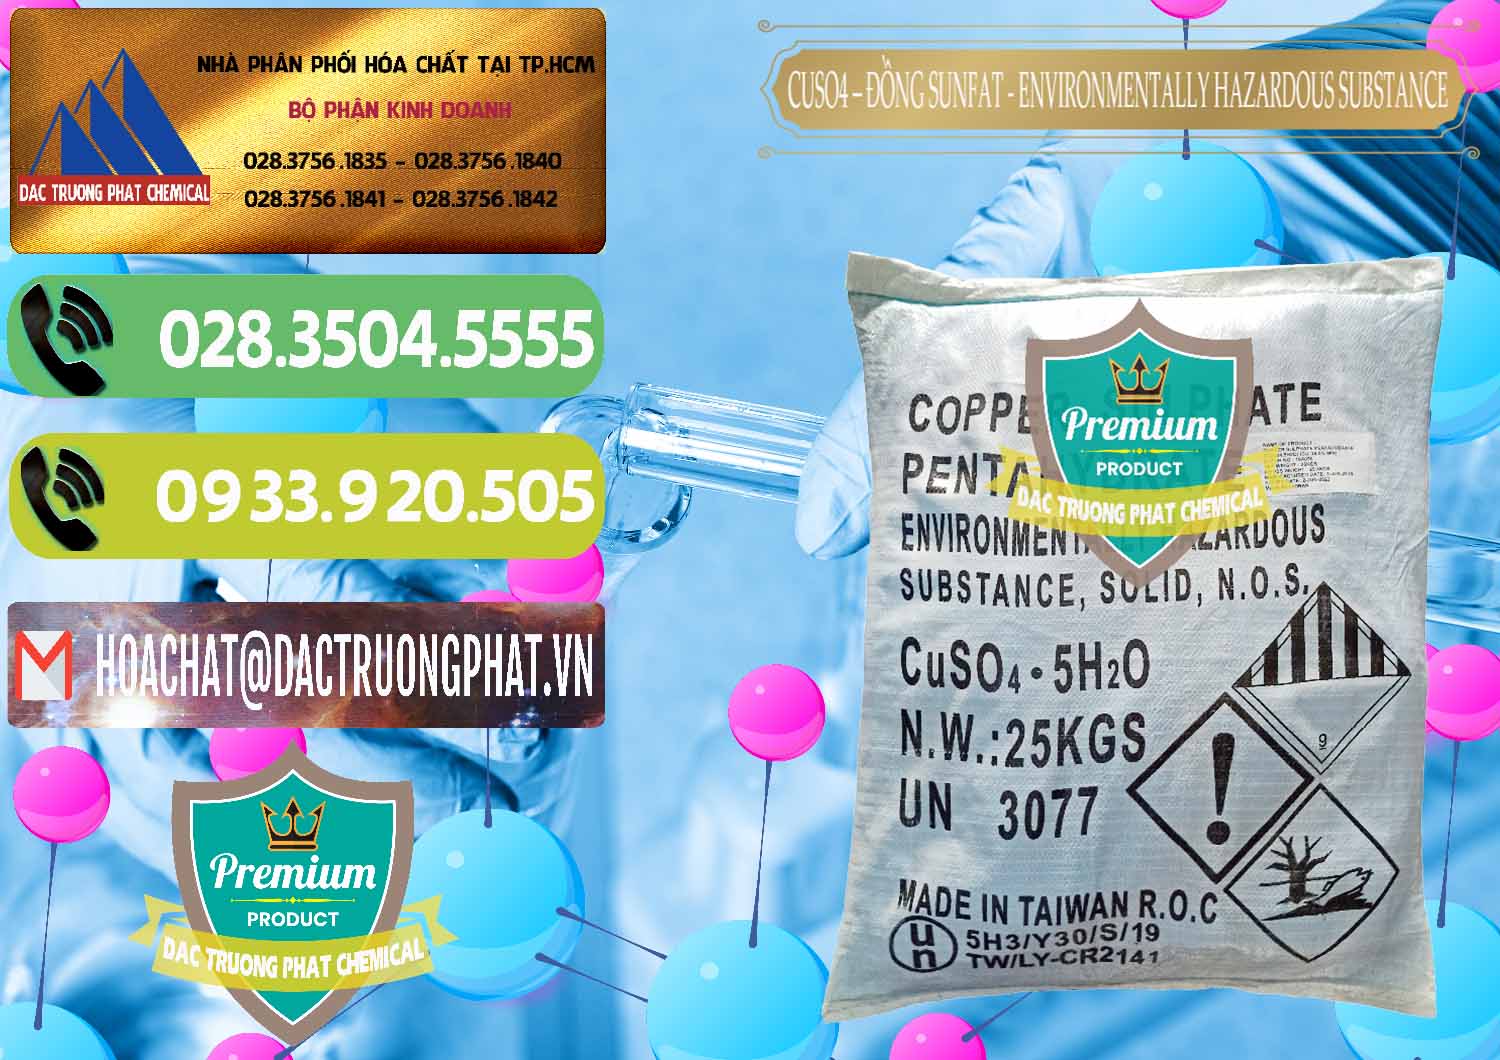 Công ty chuyên cung cấp ( bán ) CuSO4 – Đồng Sunfat Đài Loan Taiwan - 0059 - Công ty chuyên phân phối và bán hóa chất tại TP.HCM - hoachatmientay.vn